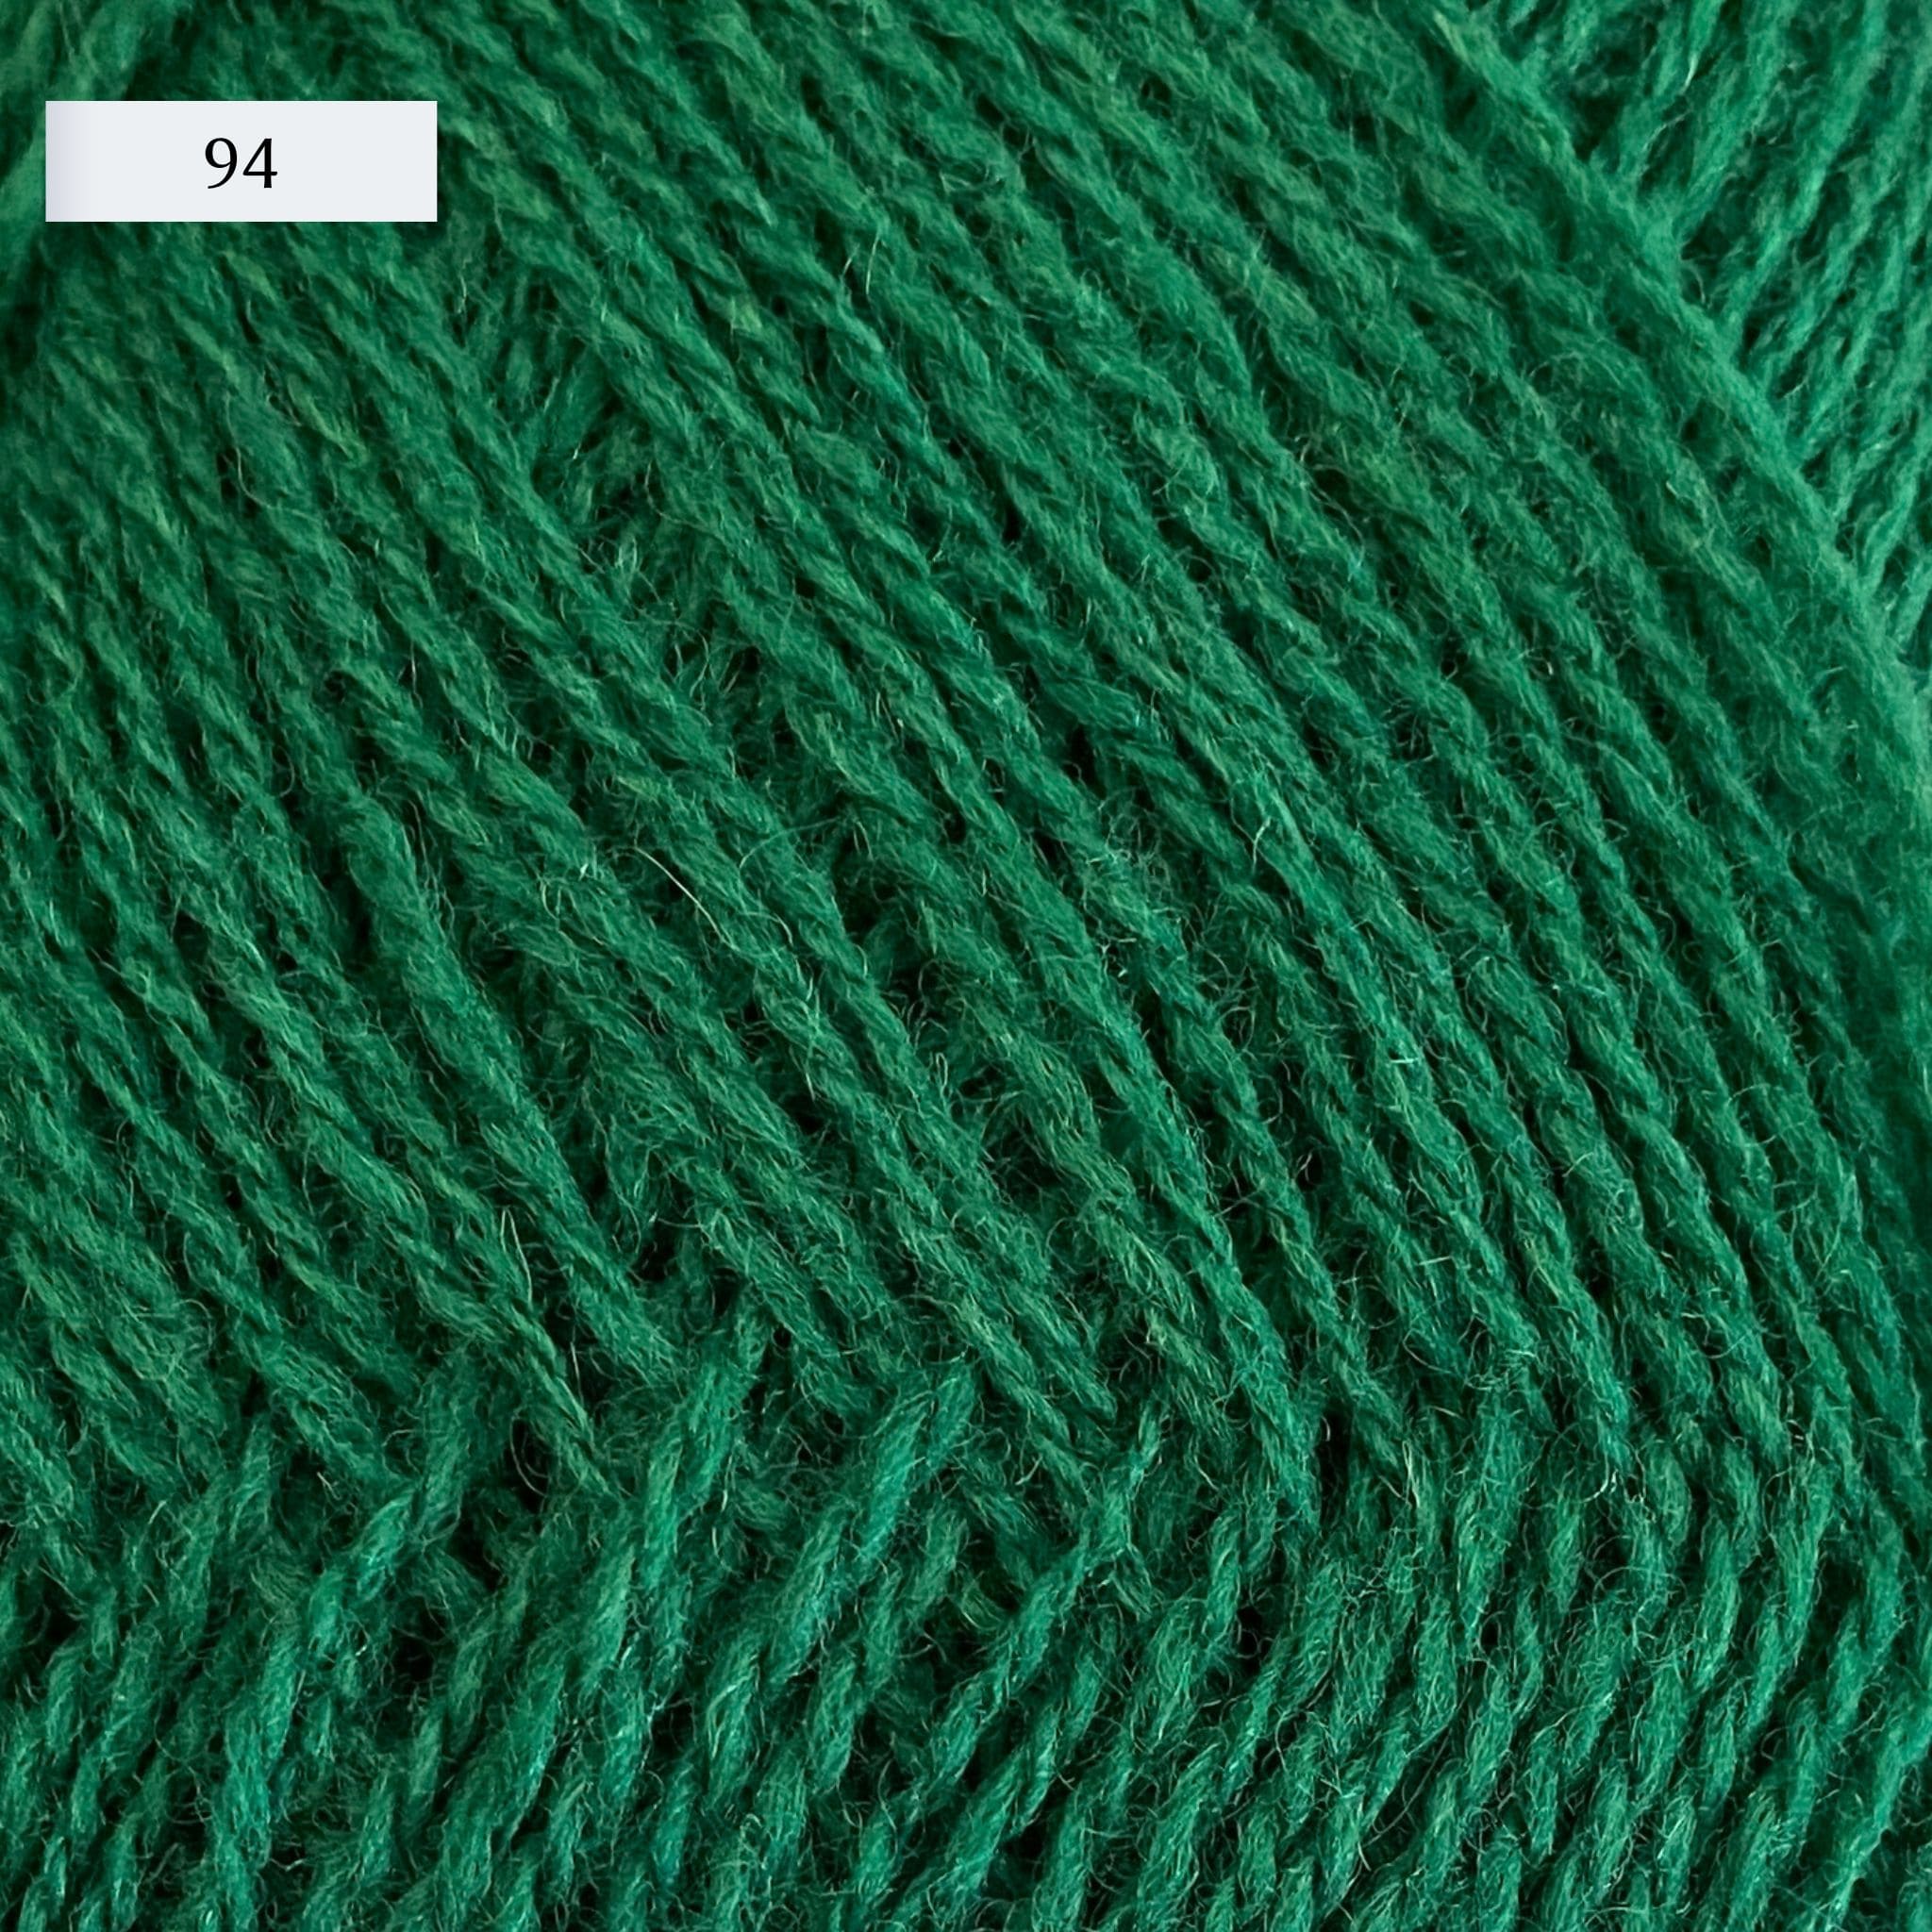 Rauma Lamullgarn, a fingering weight yarn, in color 94, a kelly green